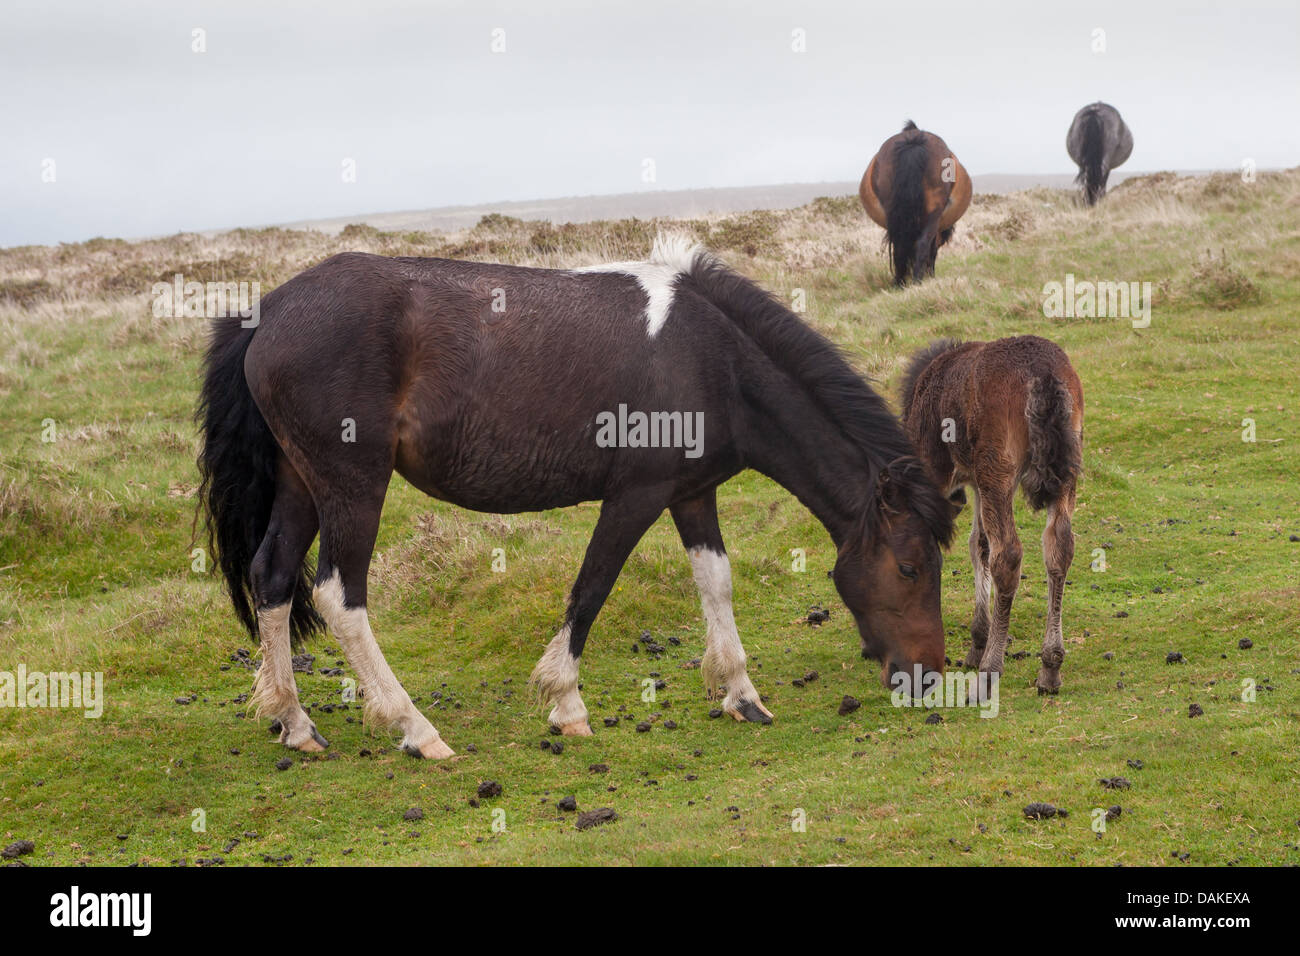 Dartmoor Ponies grazing on Dartmoor in Devon, UK. Stock Photo